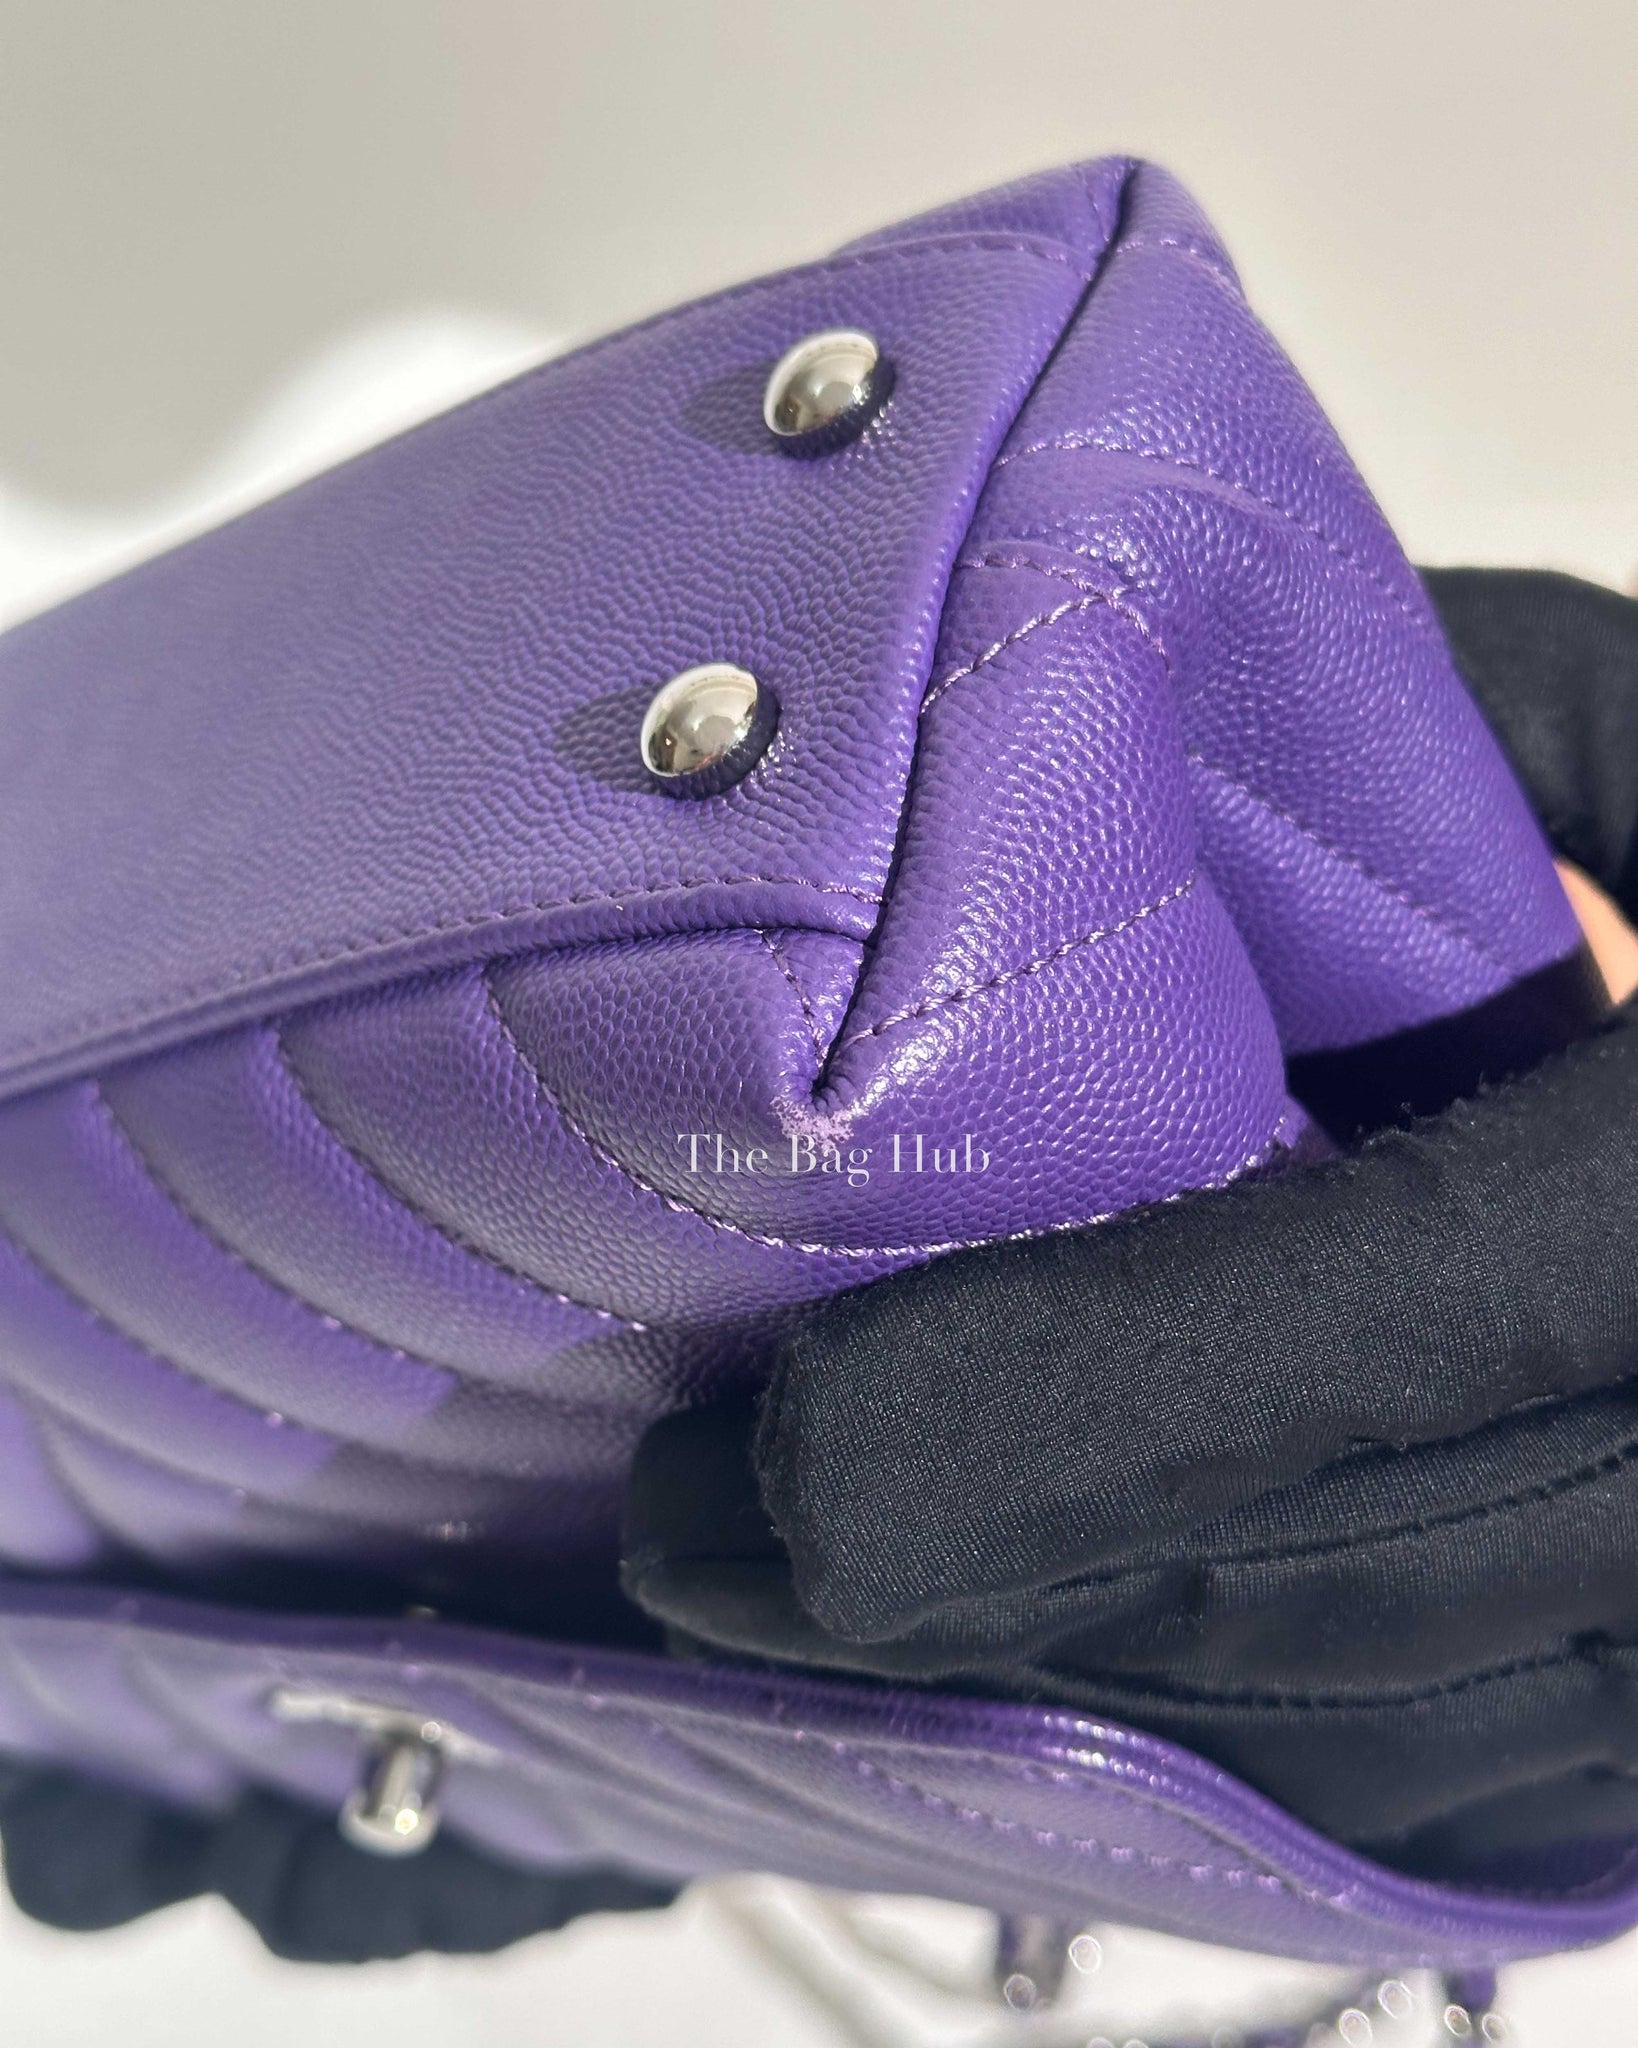 Chanel Purple Caviar Mini Coco Handle Bag SHW